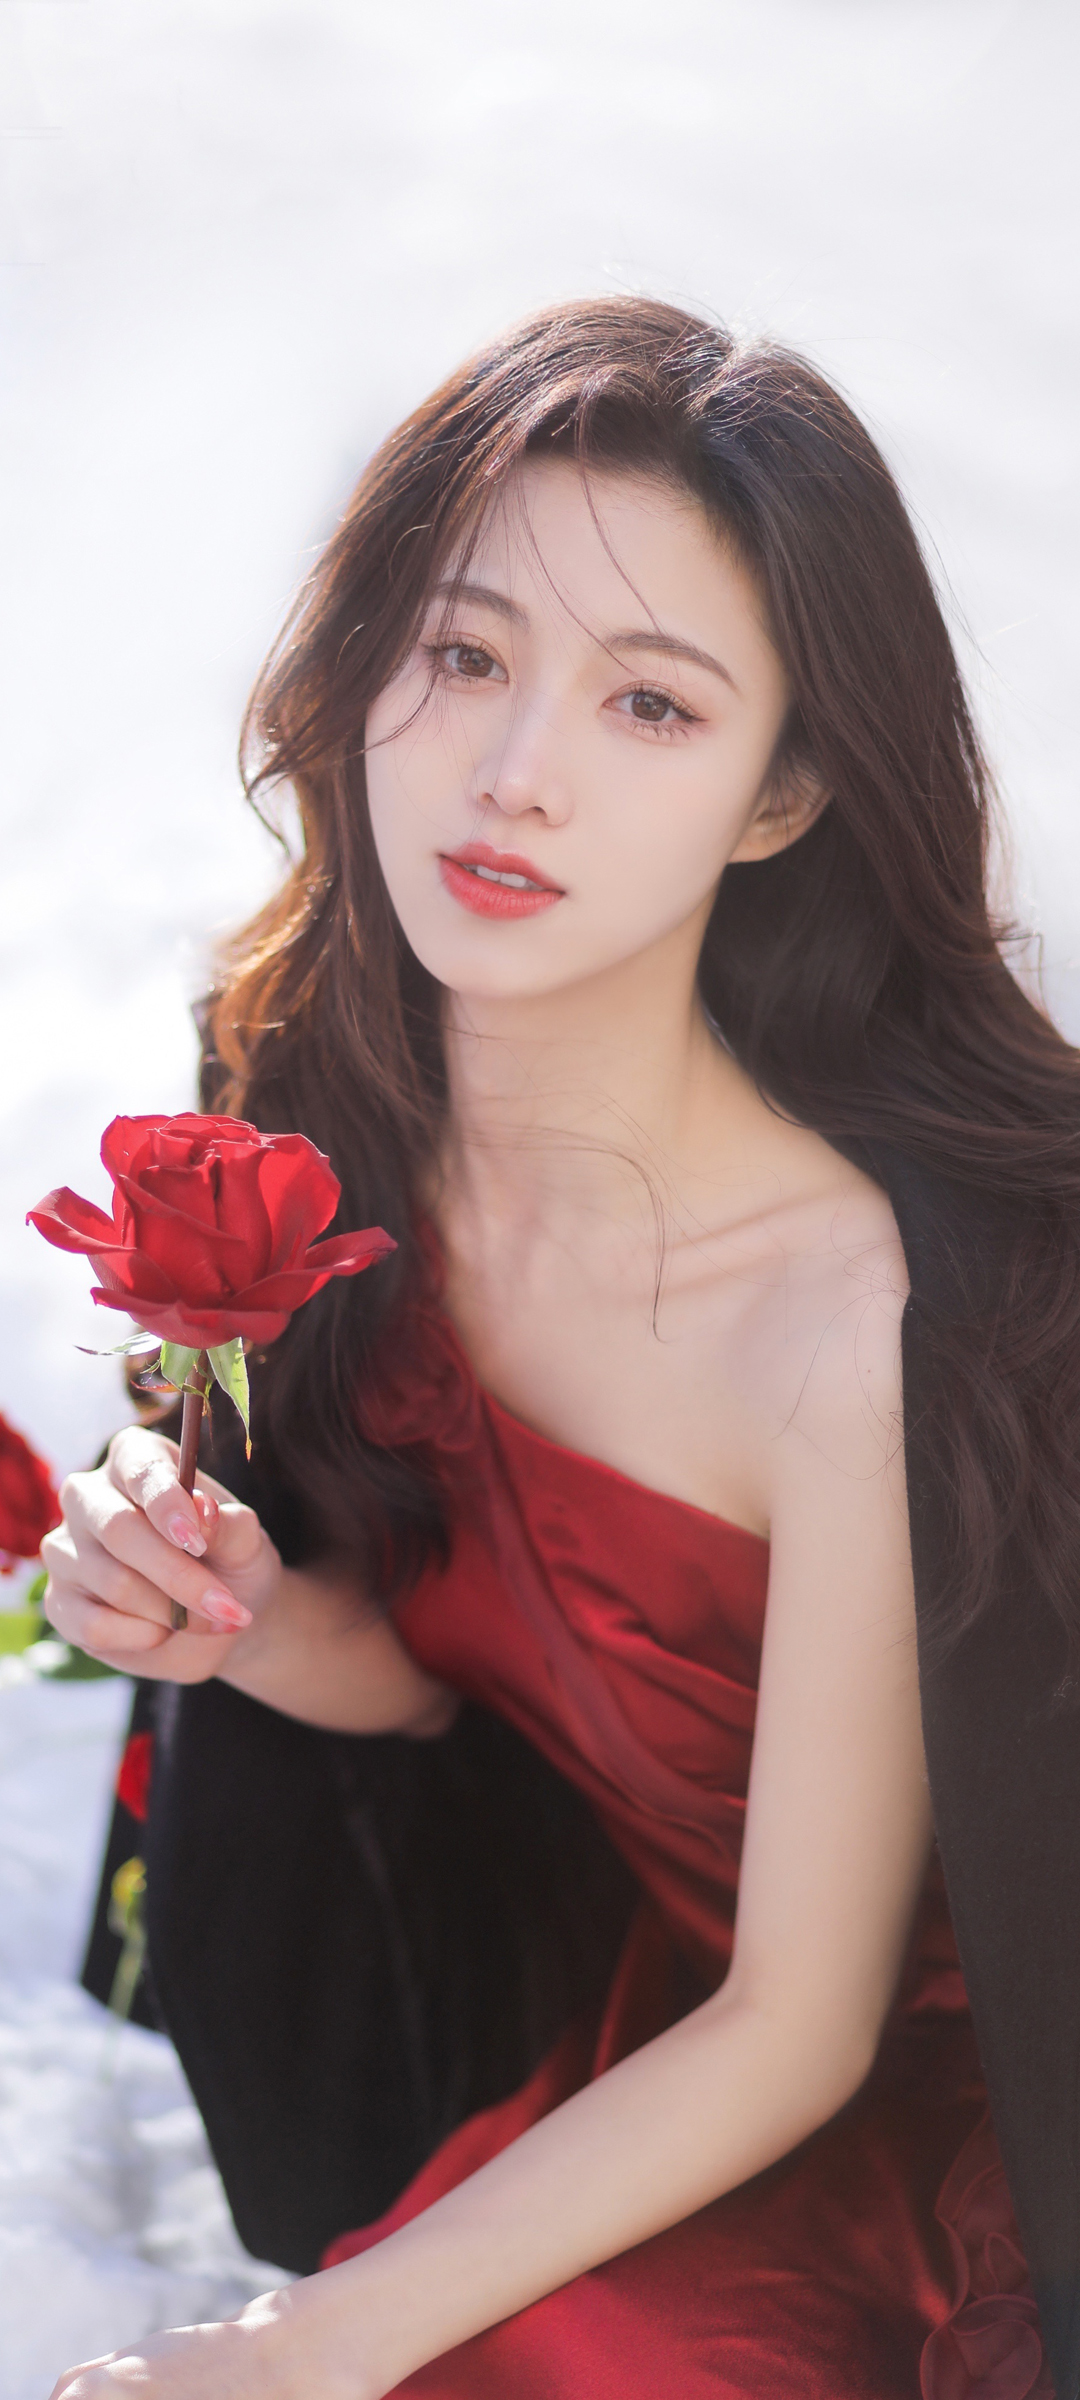 红色裙子 长发 玫瑰花 甜美美女手机壁纸